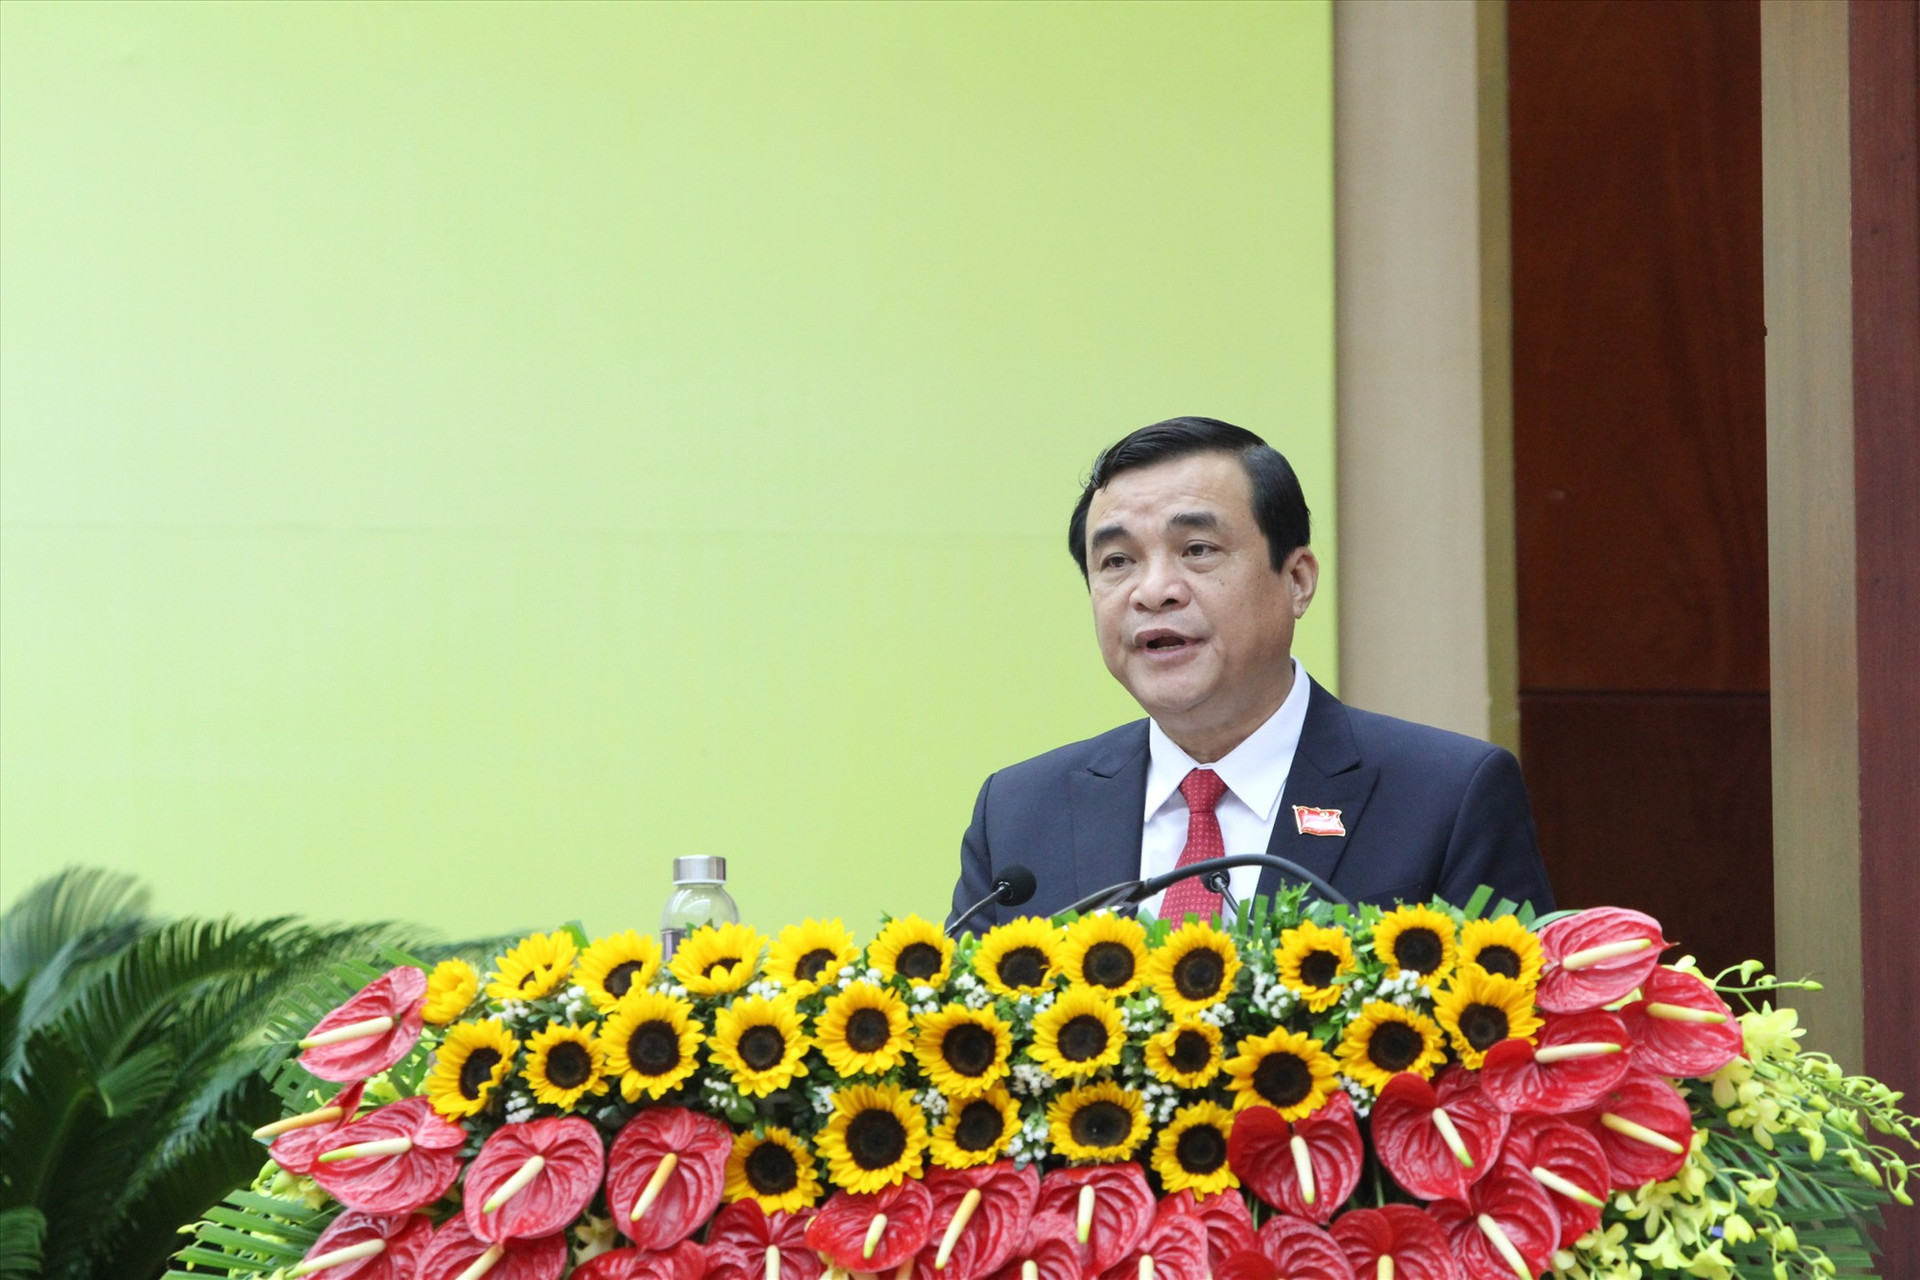 Đồng chí Phan Việt Cường trình bày báo cáo đề án nhân sự Ban Chấp hành Đảng bộ tỉnh lần thứ XXII.